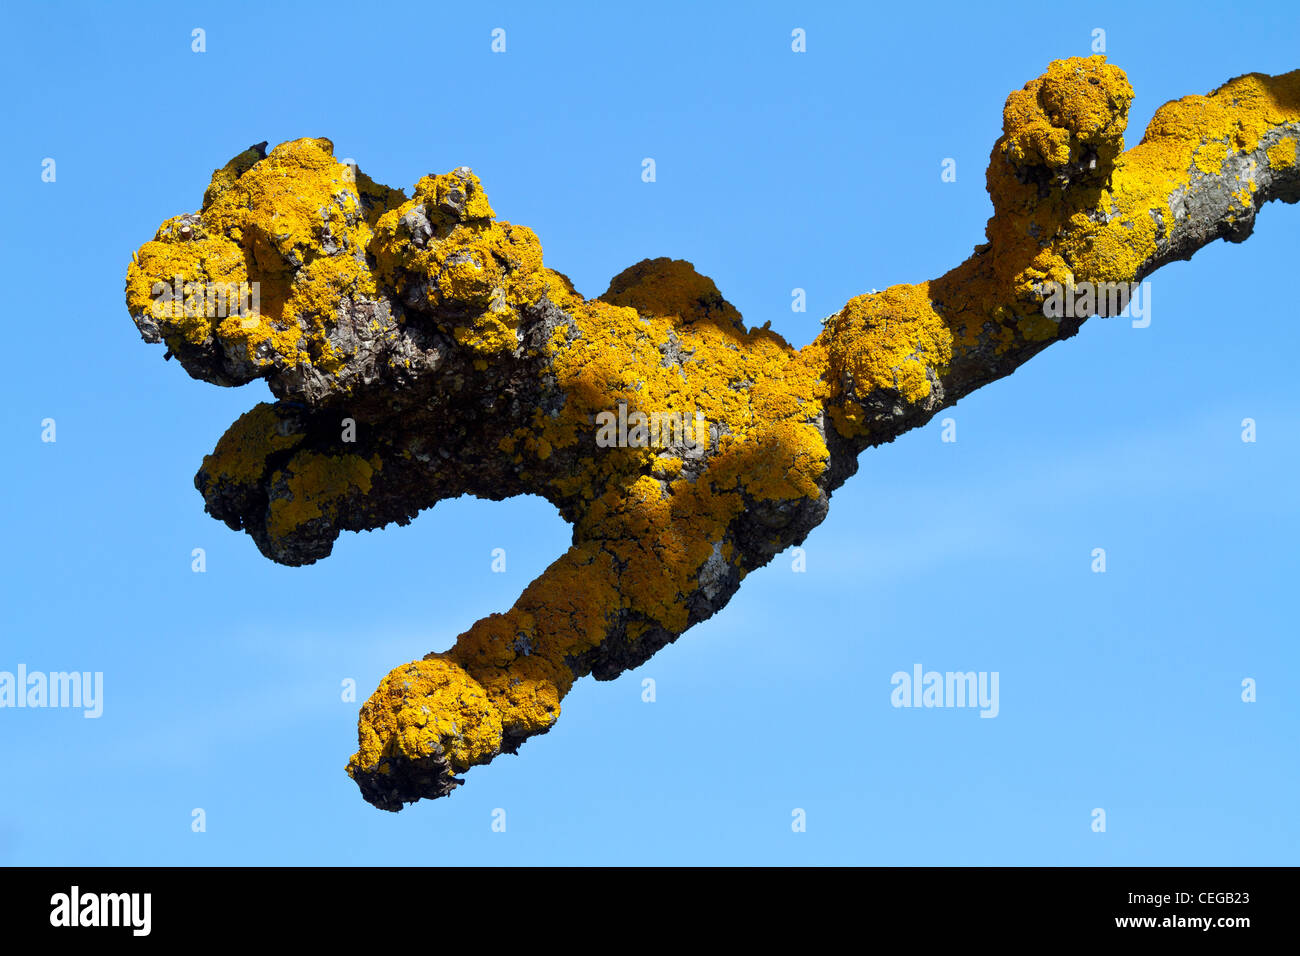 Lichene giallo su un pollarded (potato) London plane tree (platanus acerifolia ibrido) cresce in Golden Gate Park di San Francisco. Foto Stock